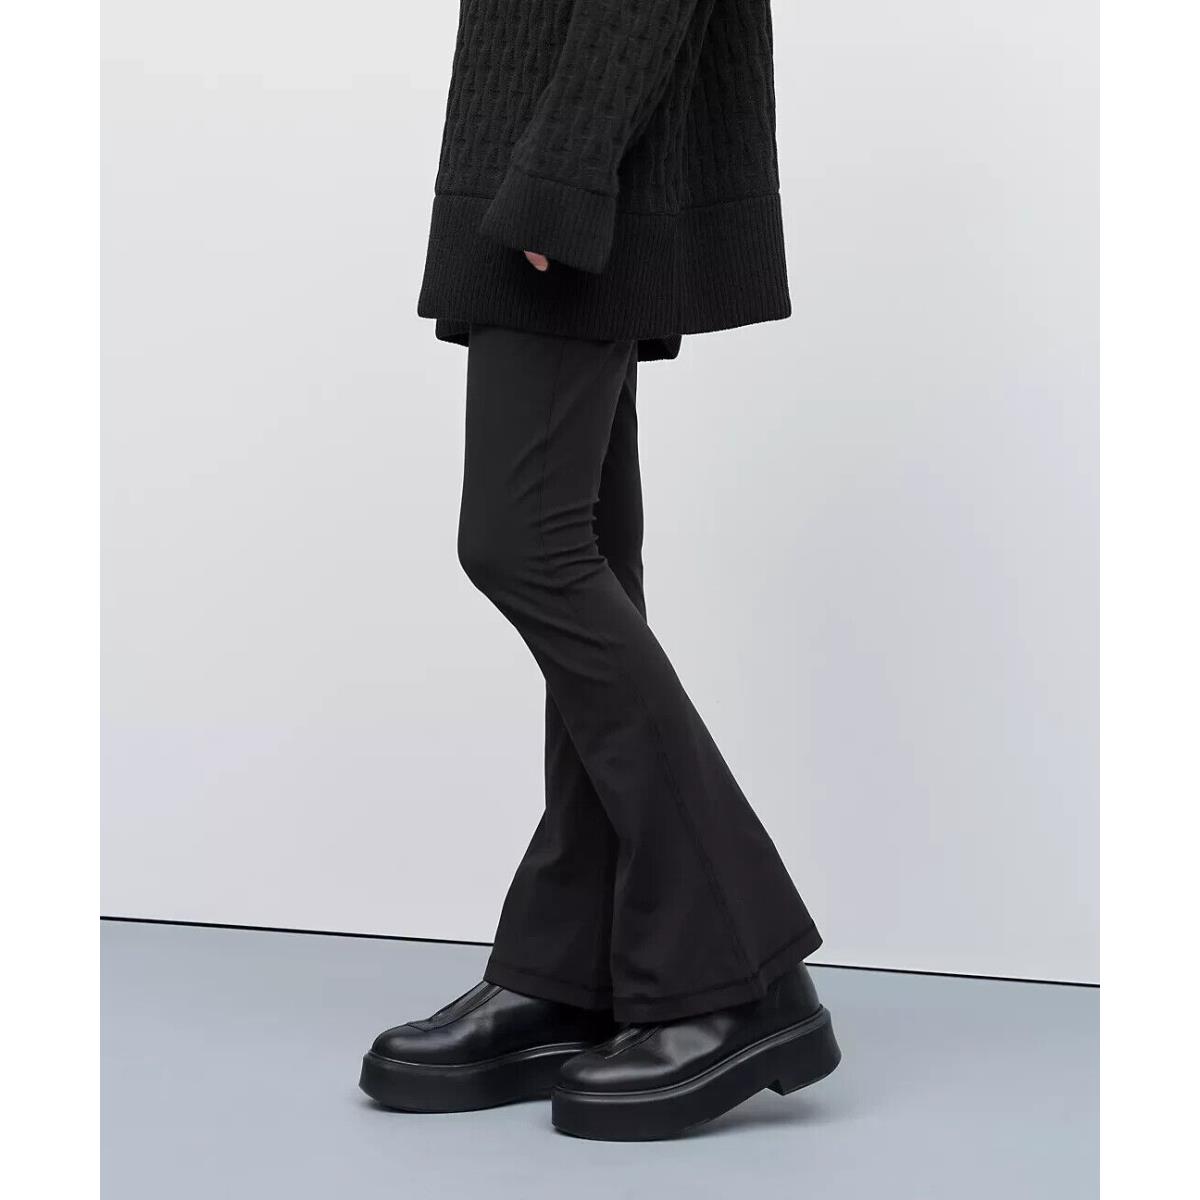 Lululemon Align High-rise Mini-flared Pant Regular Black Size 8. LW5EUSS